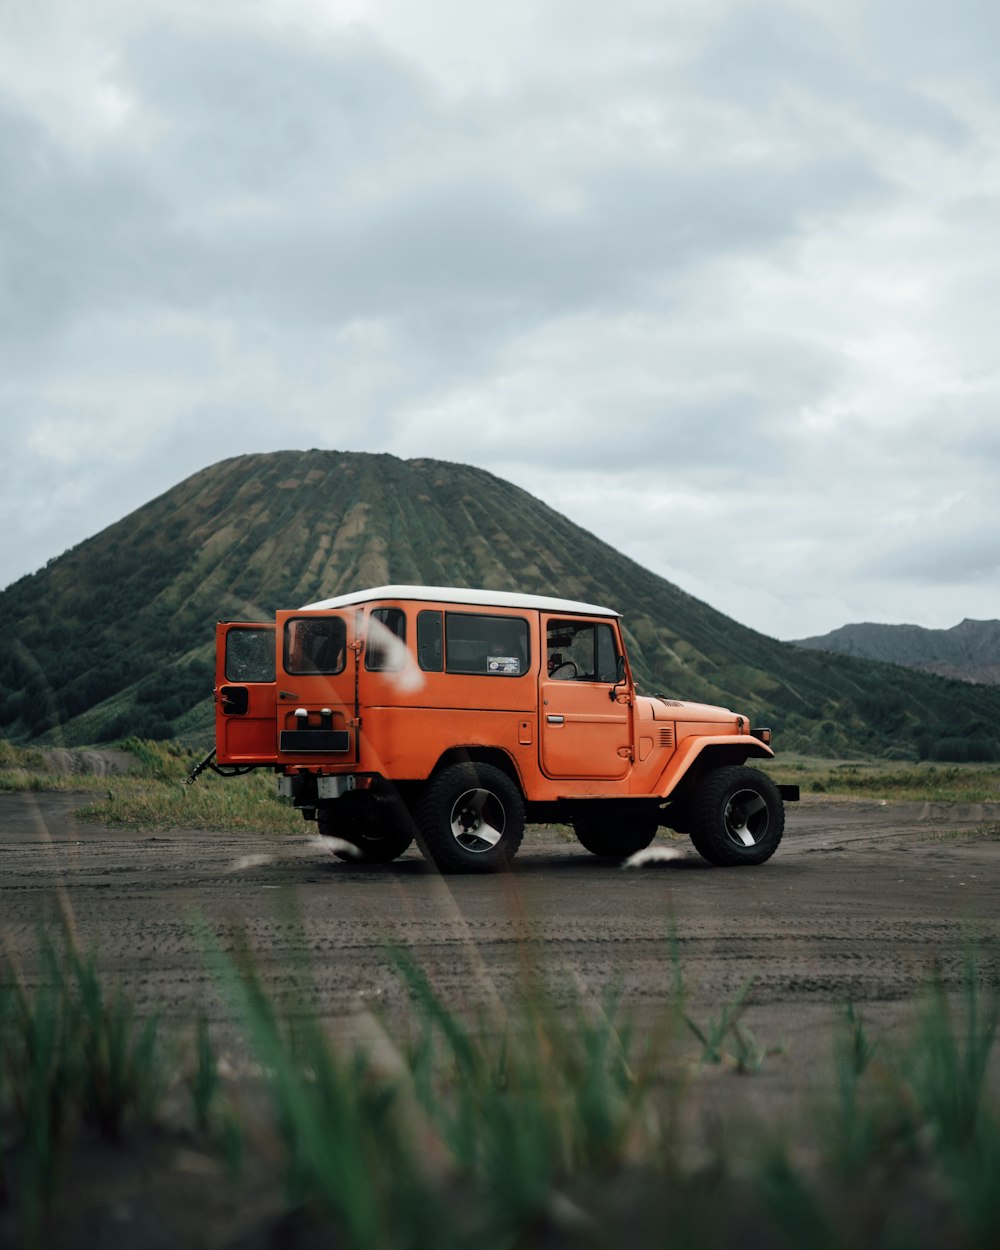 Une jeep orange est garée devant une montagne